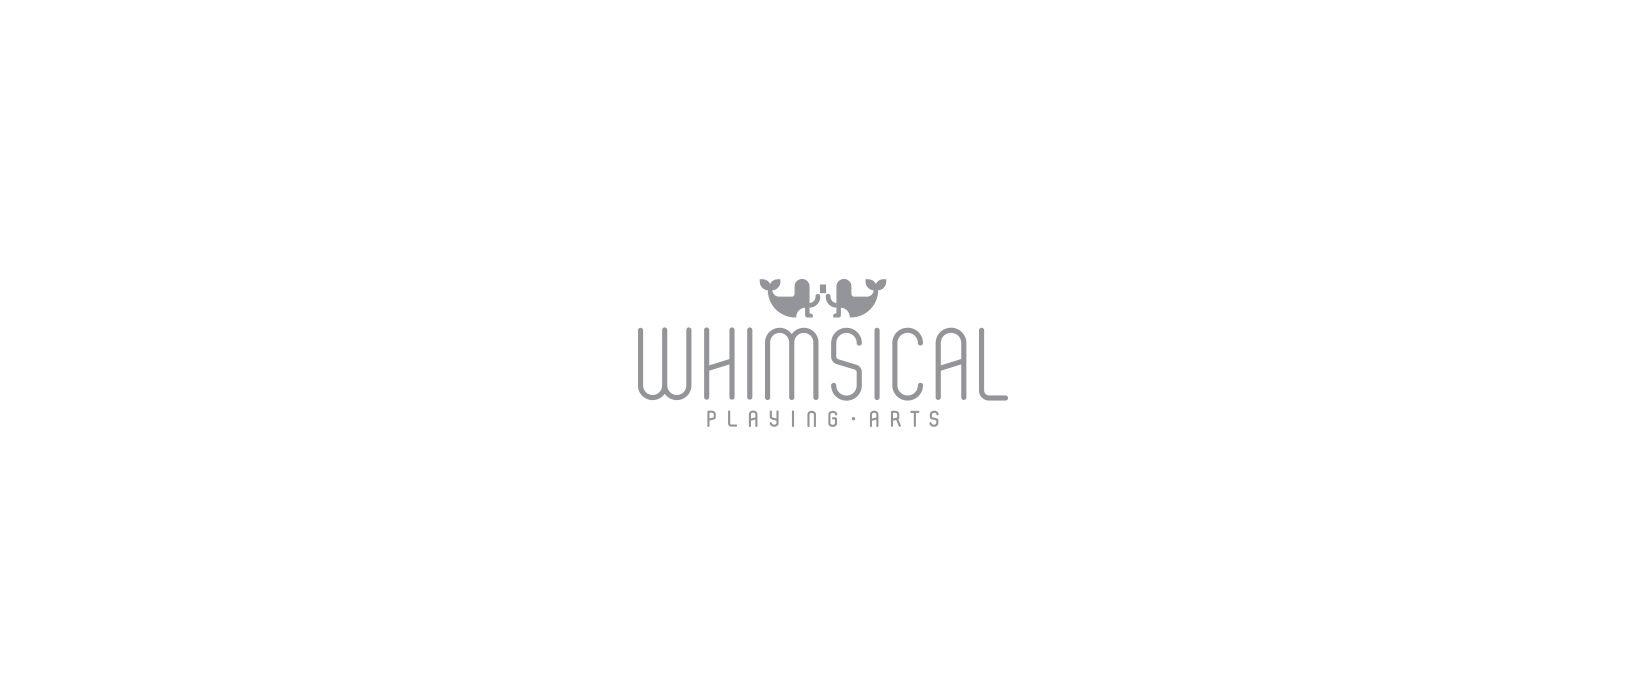 Whimsical Logo - Whimsical Playing Arts I — Oksal Yesilok | Graphics & Products